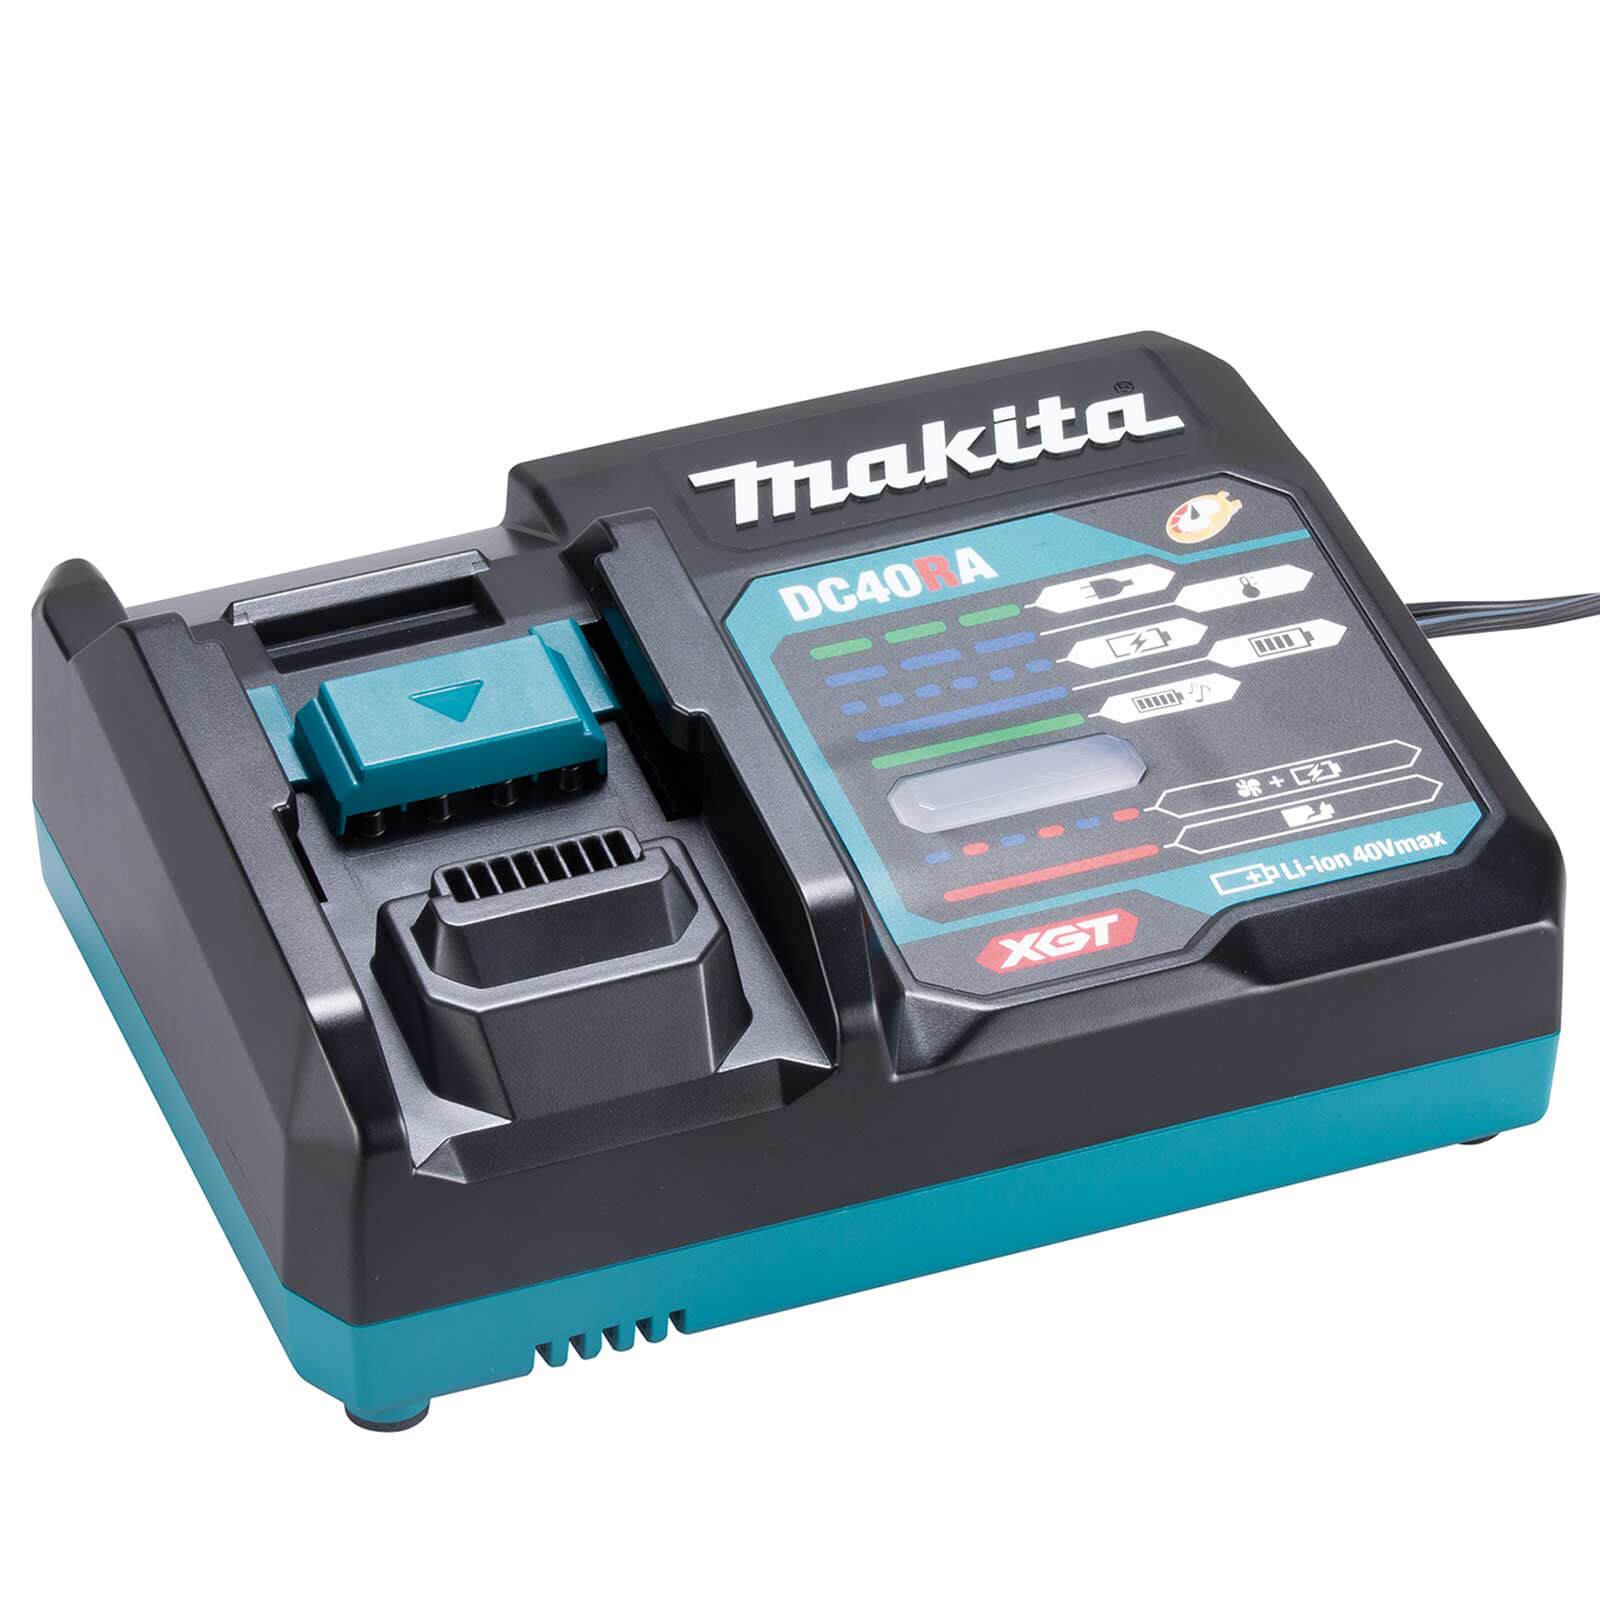 Image of Makita DC40RA 40v Max XGT Battery Fast Charger 110v